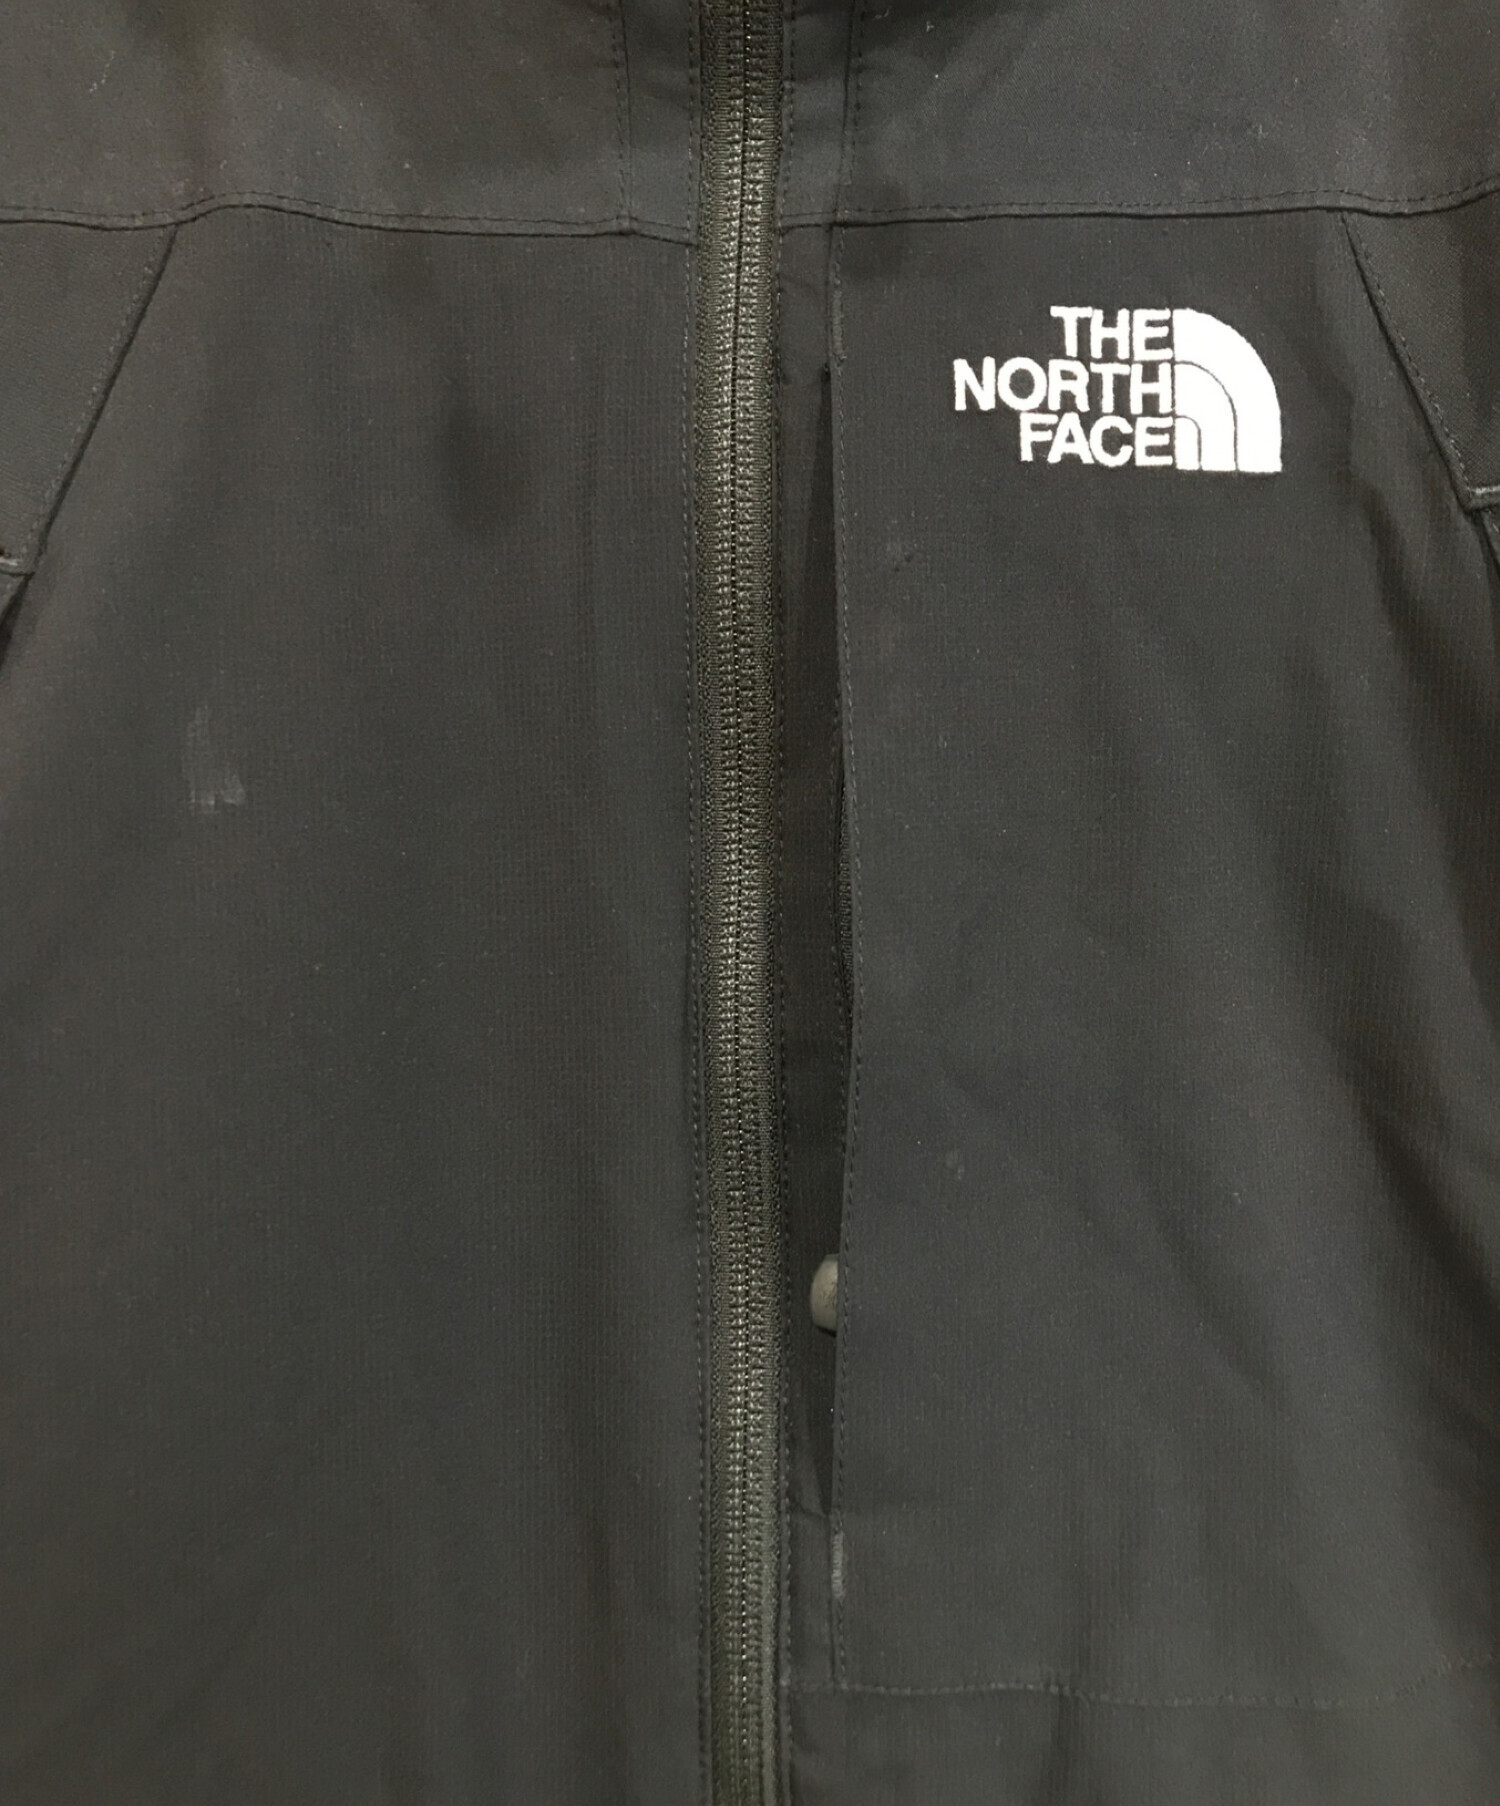 THE NORTH FACE (ザ ノース フェイス) プリマロフトジャケット ブラック サイズ:L